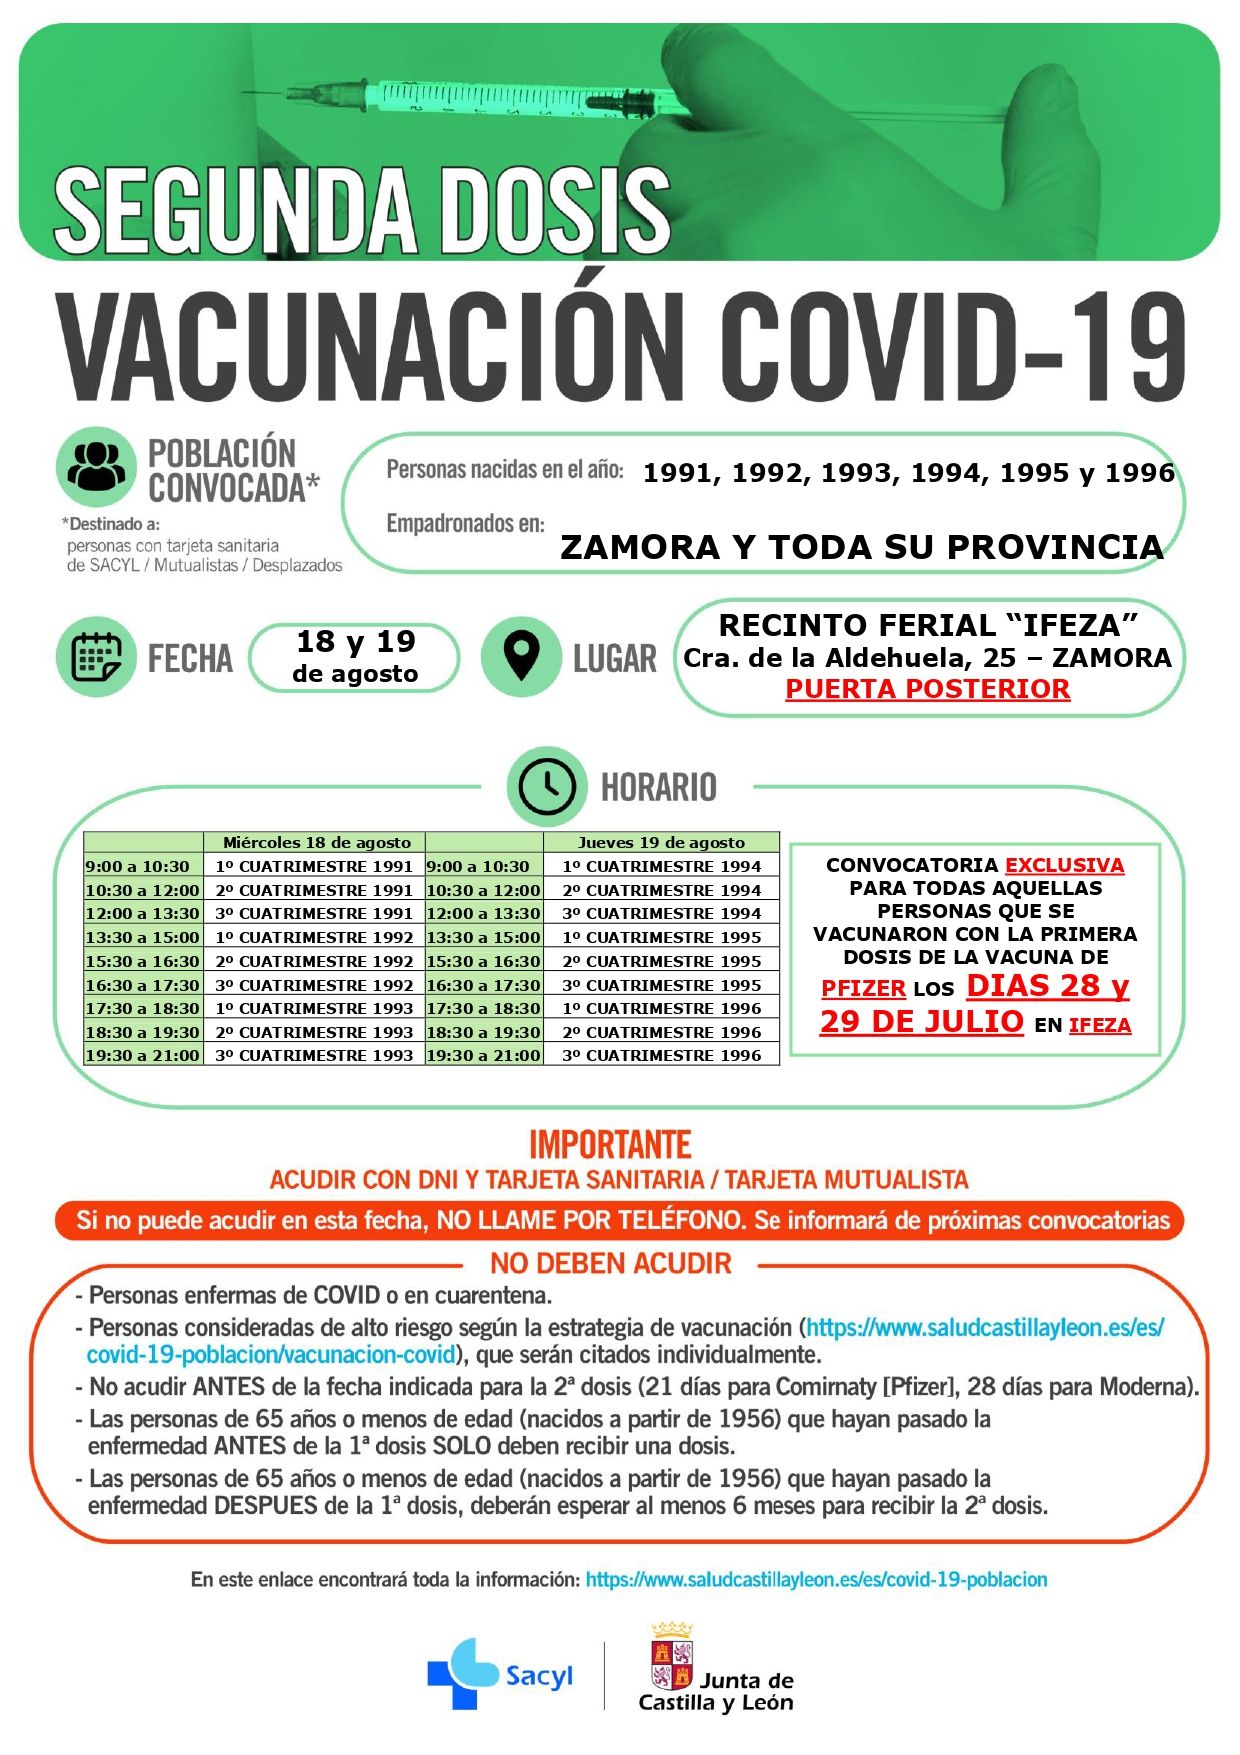 Calendario de vacunación para los días 18 y 19 de agosto.